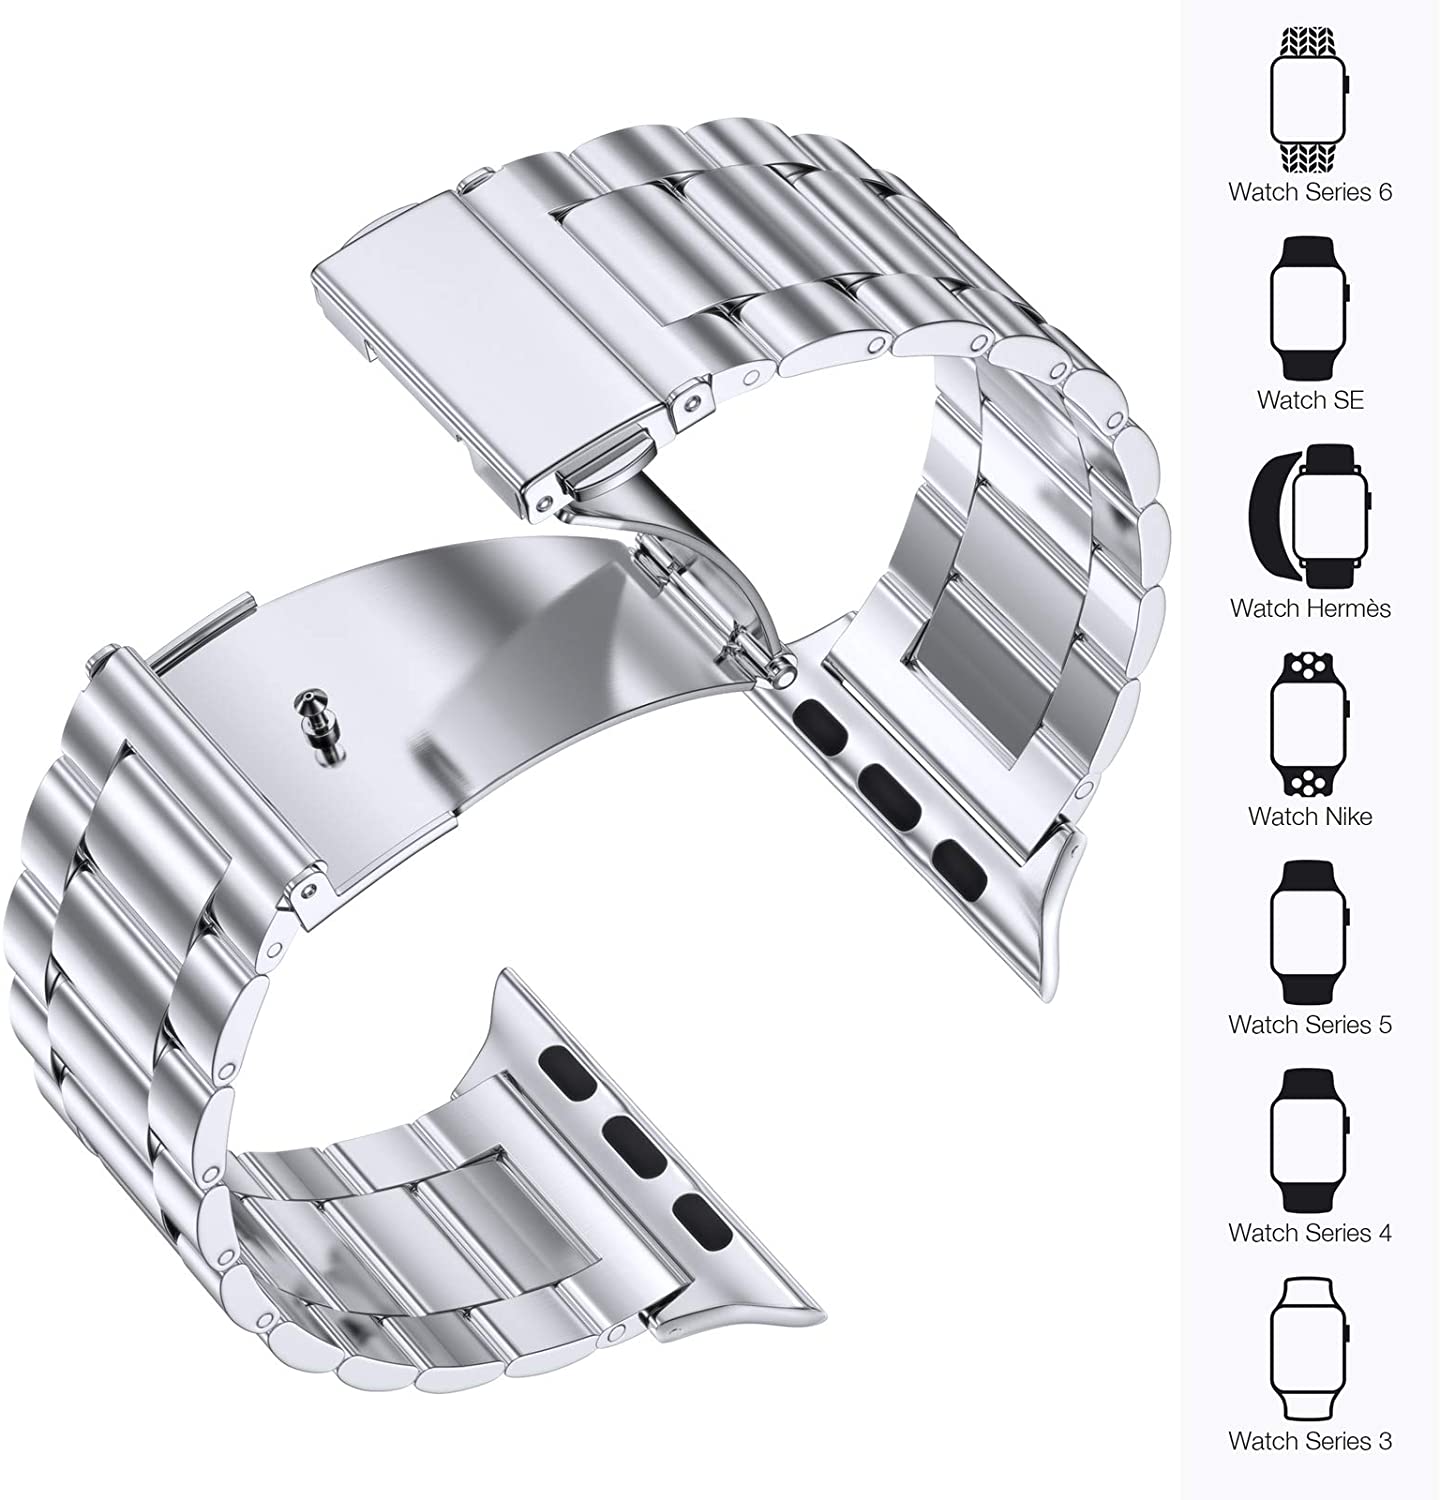 Hochwertiges Metall Armband für ihre Apple Watch